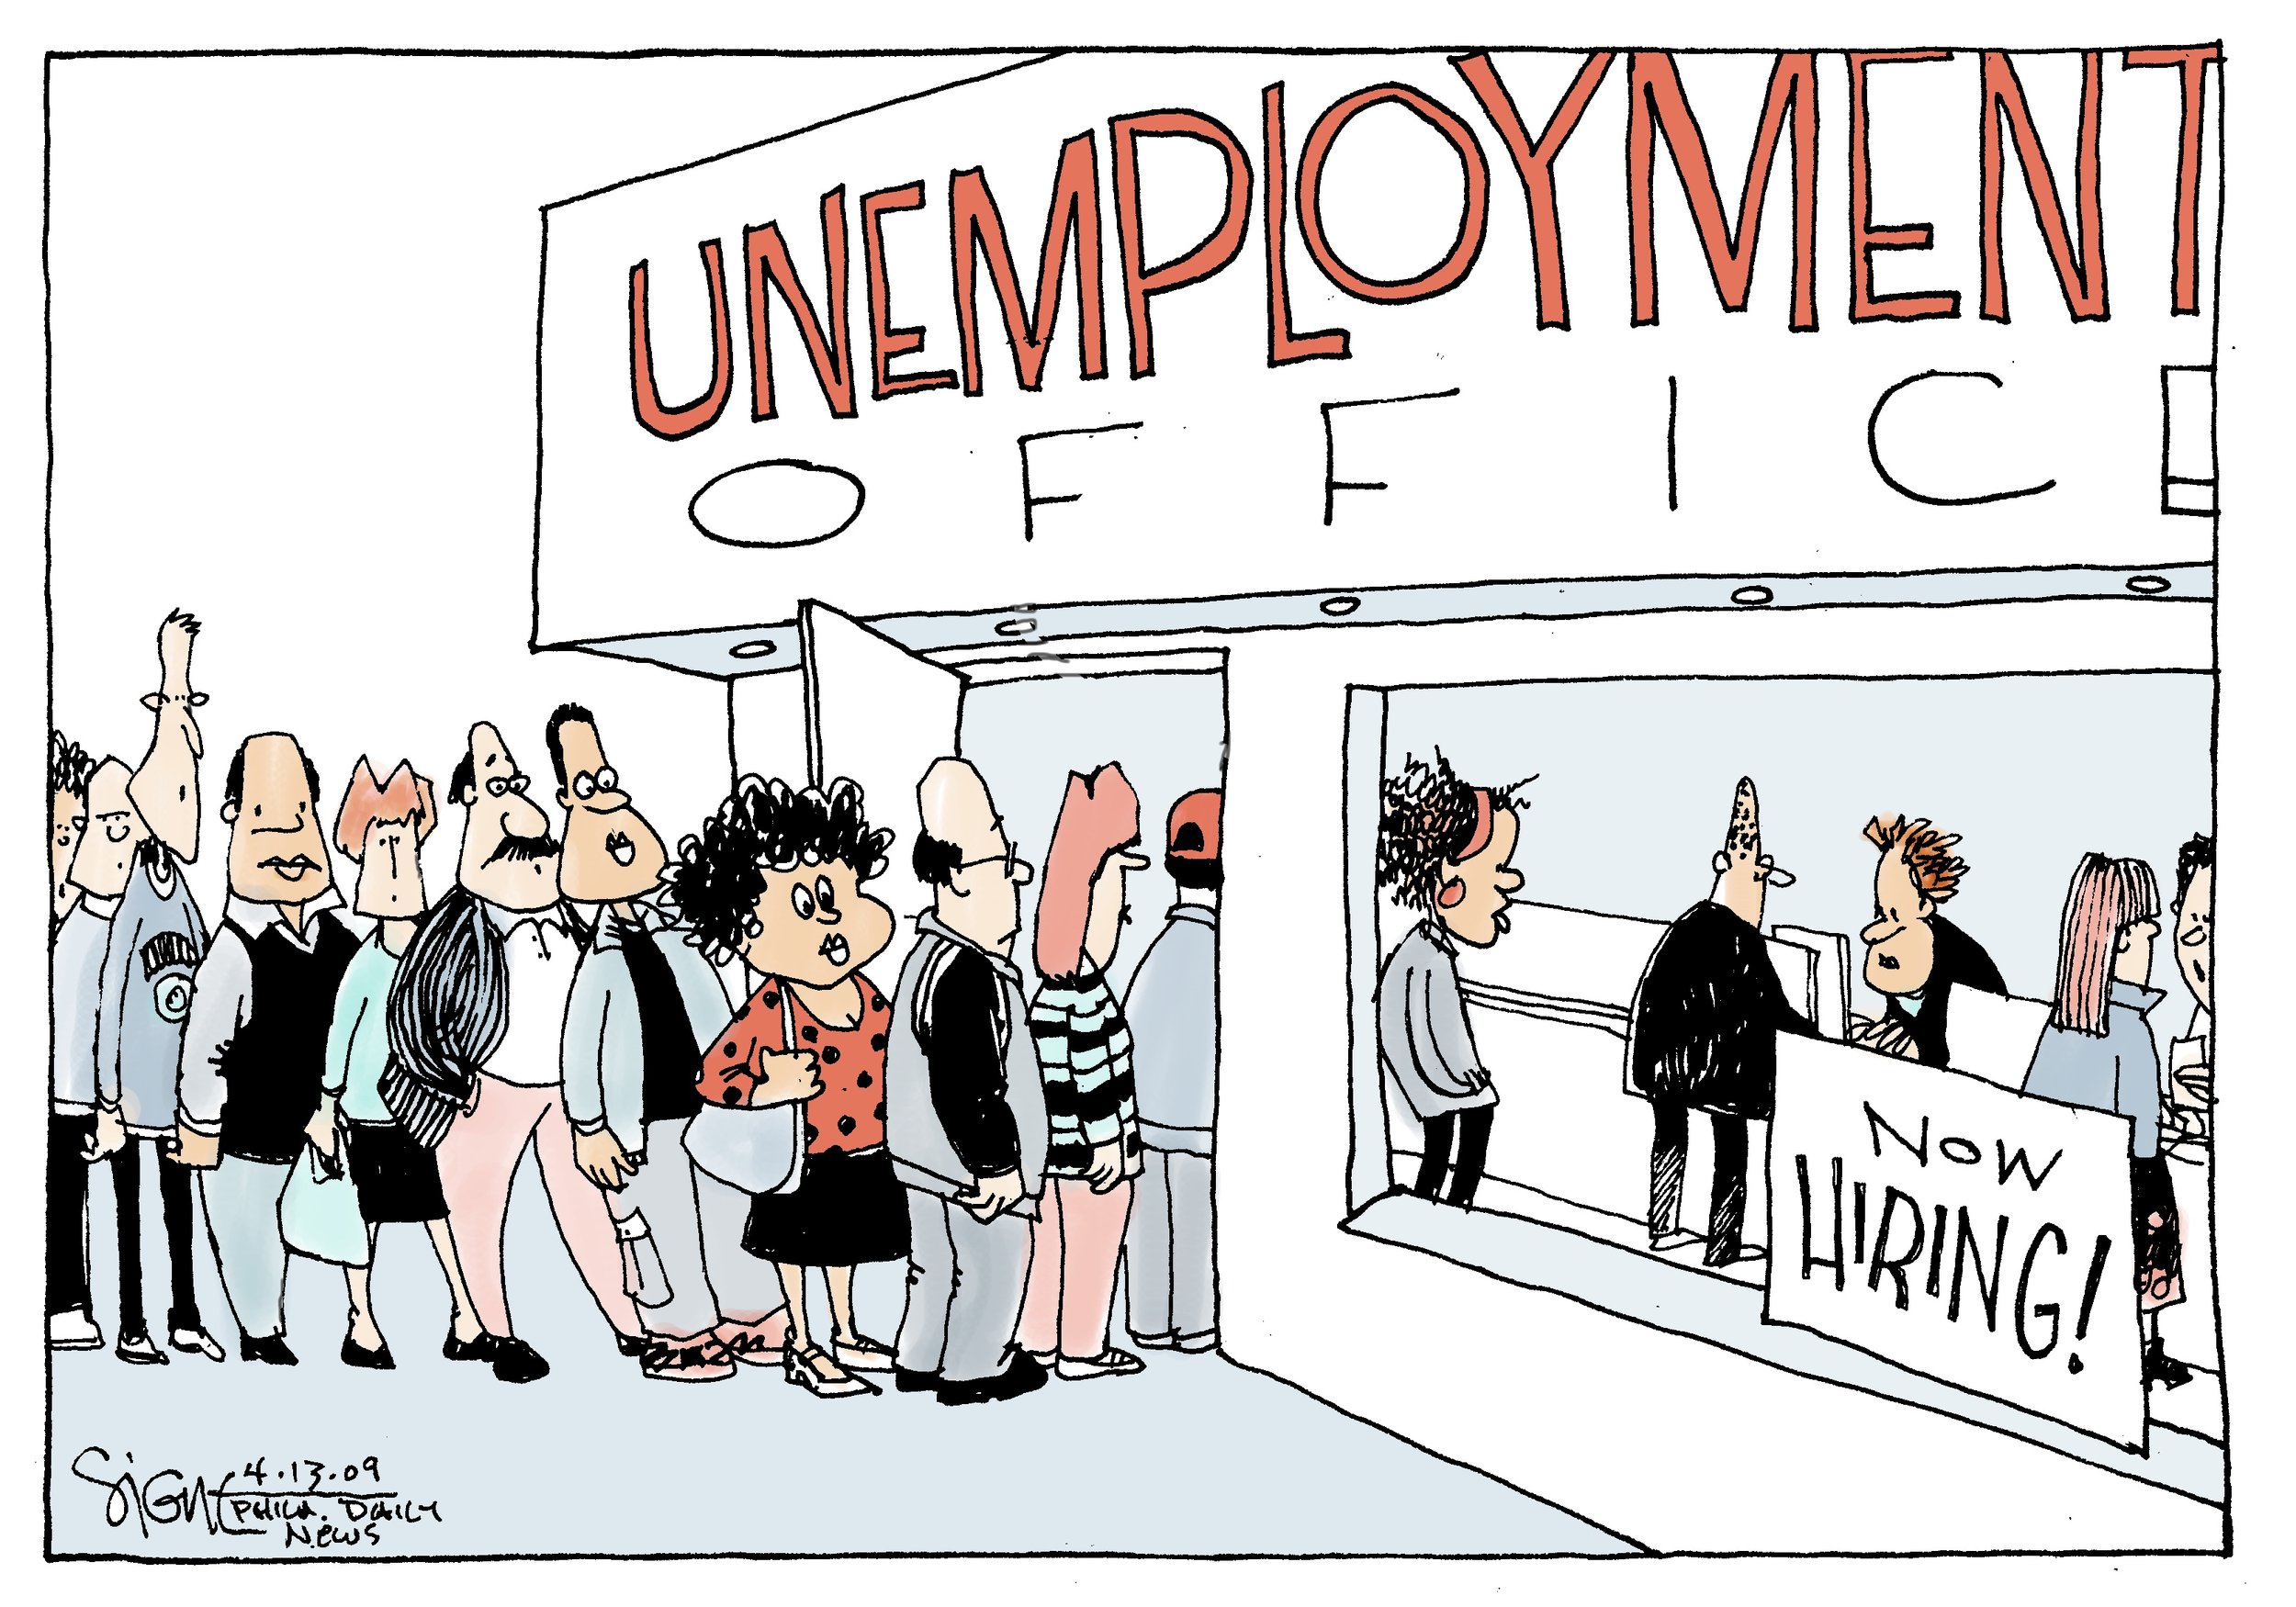 04-13-09 UnemploymentC.jpg